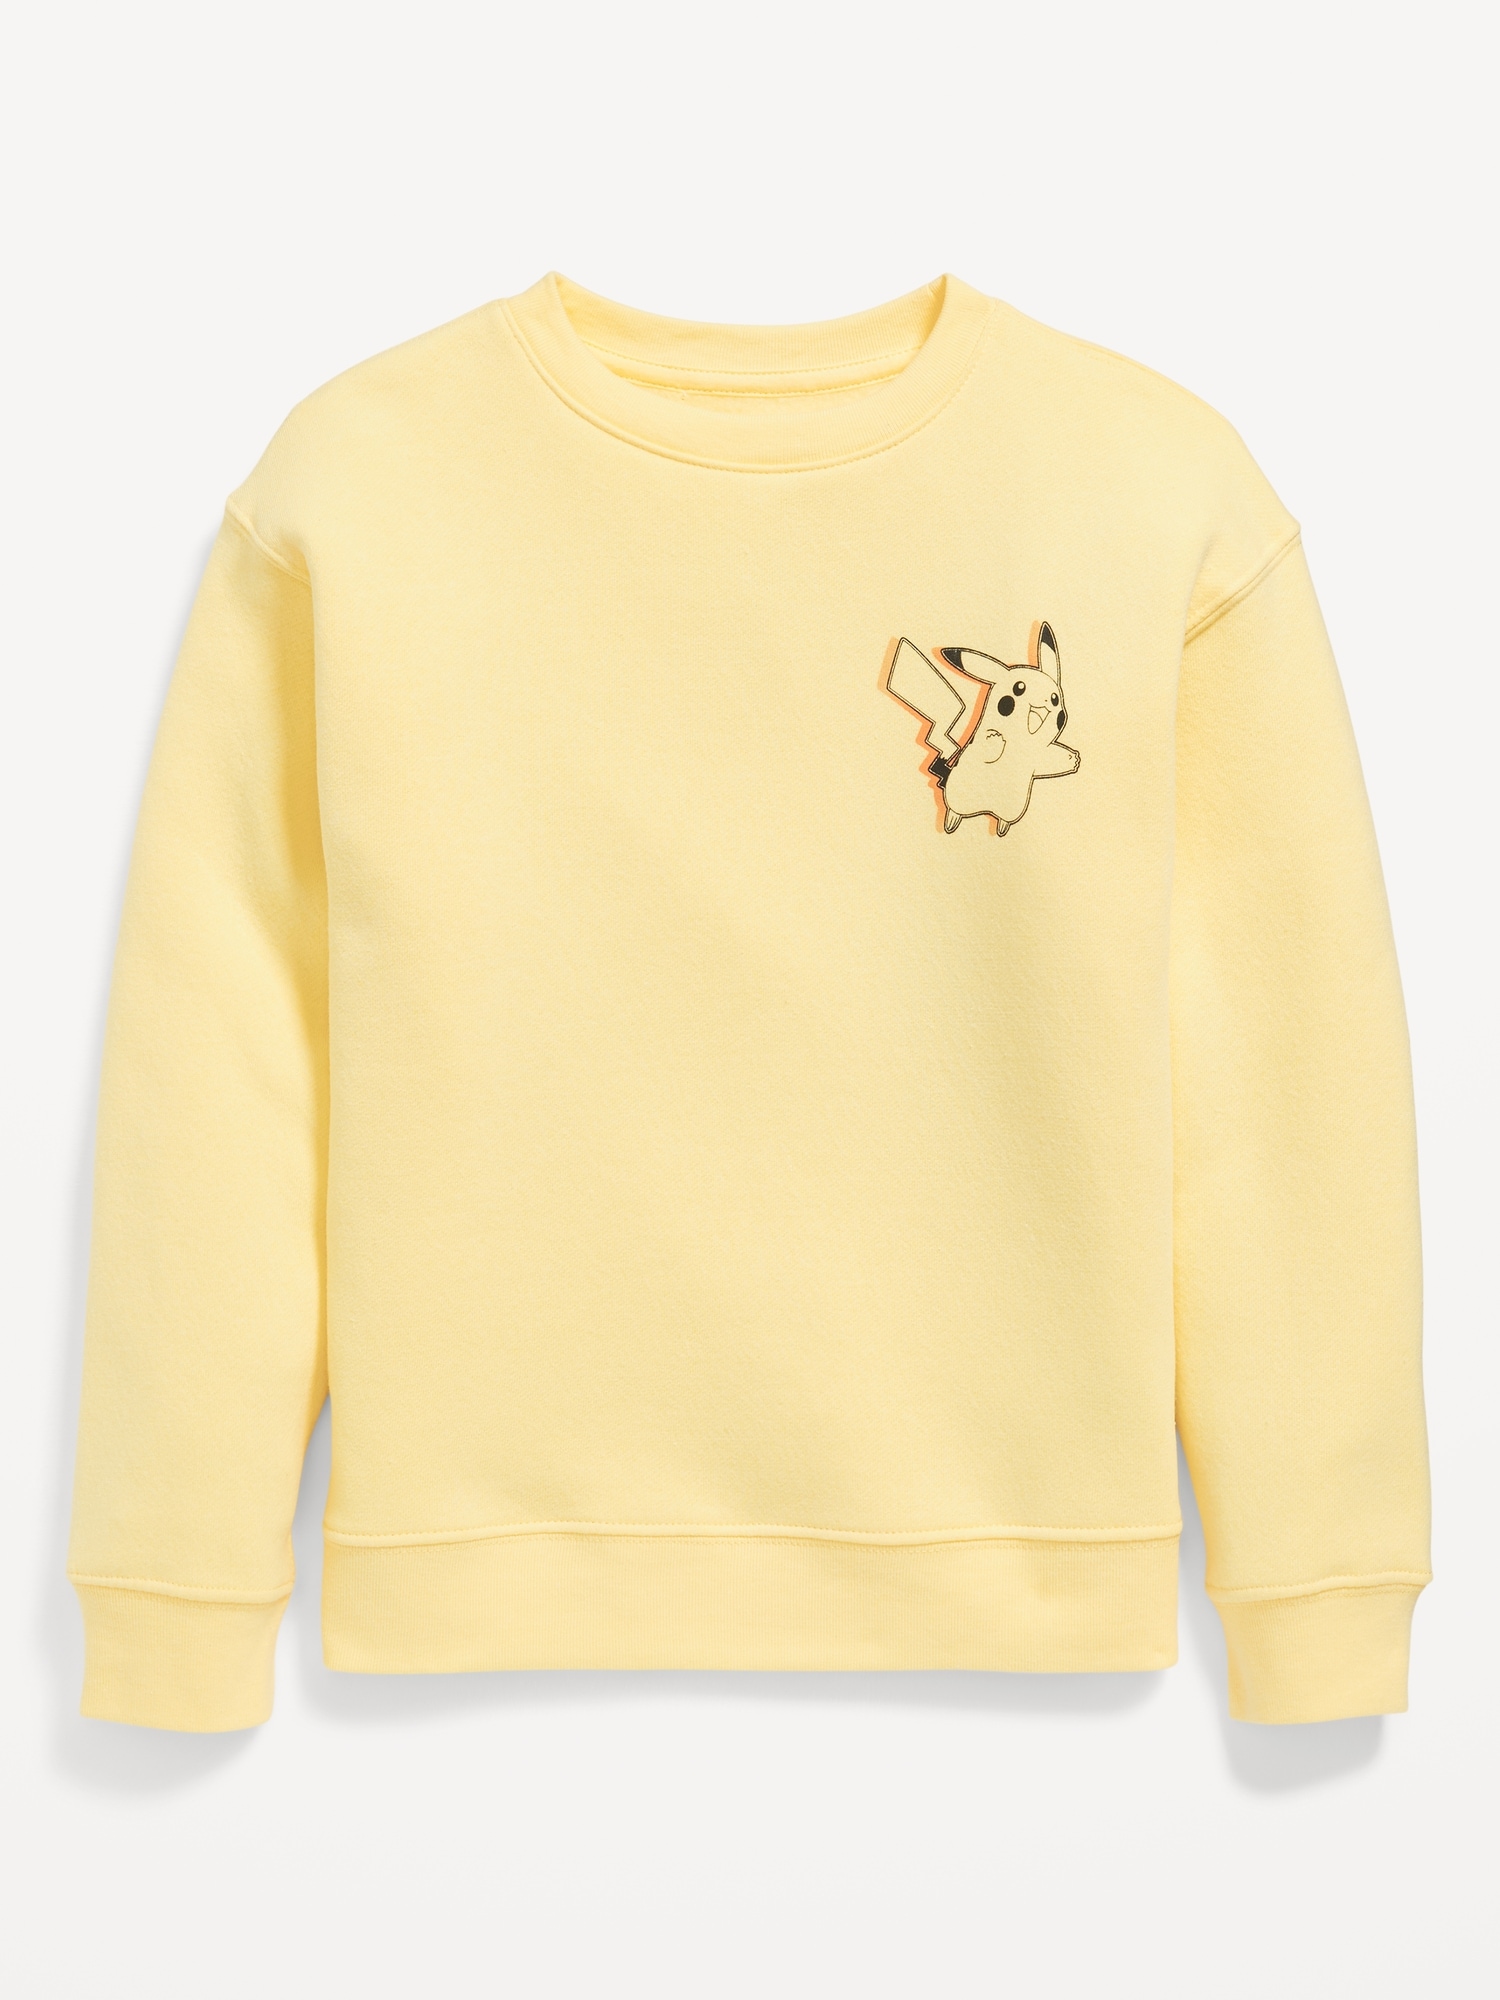 Pokemon Gender-Neutral Crew-Neck Sweatshirt for Kids